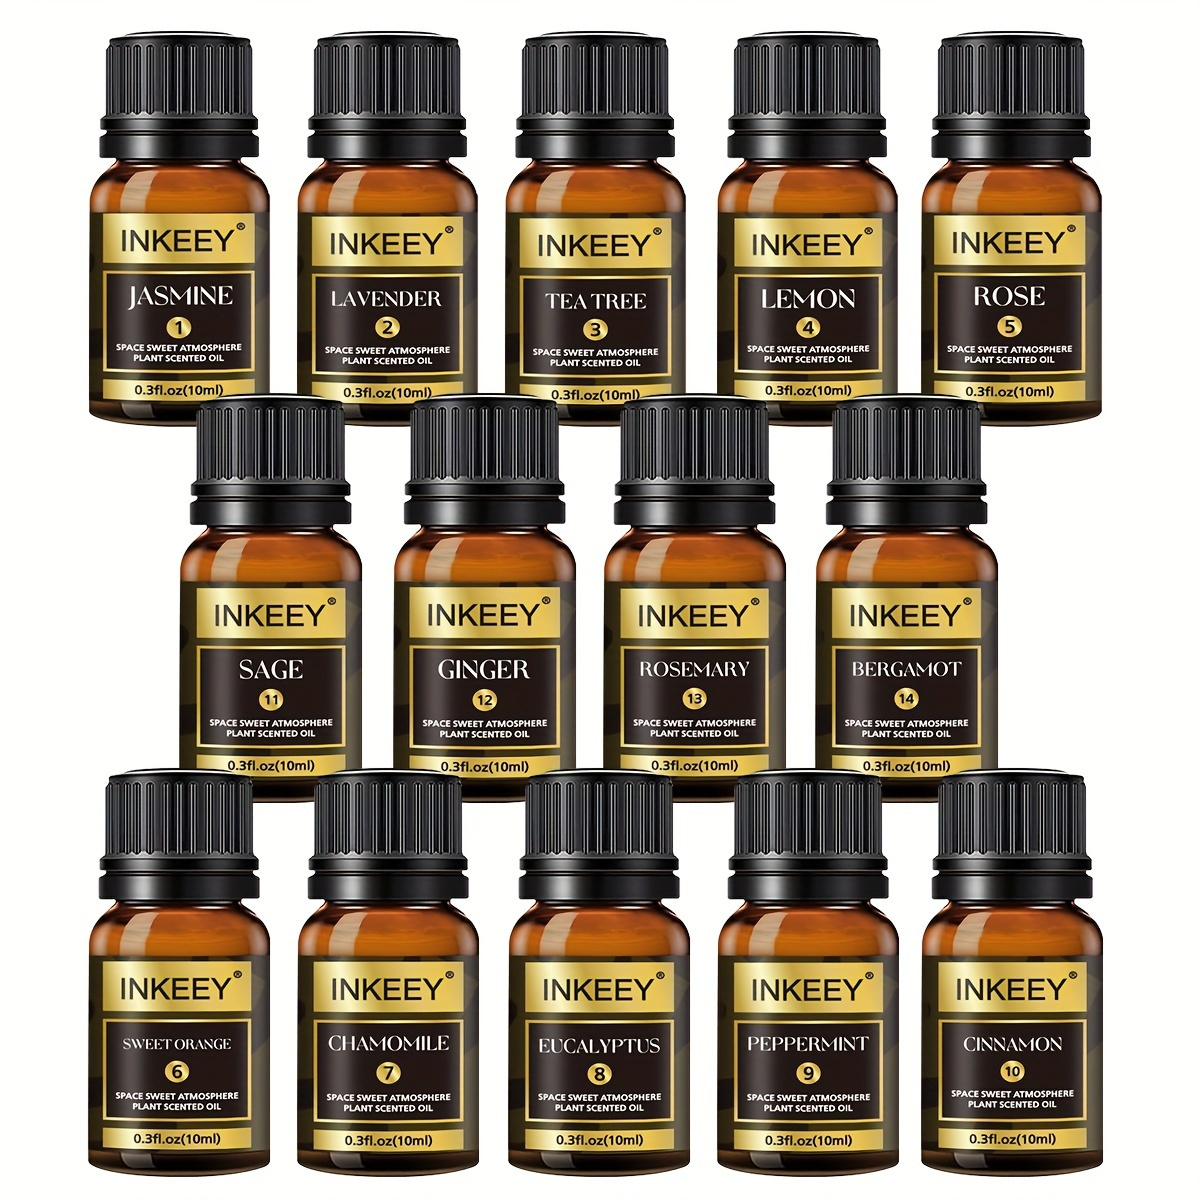 2pcs 10ml Jasmine + Gardenia Essential Oil Set – BURIBURI STORE